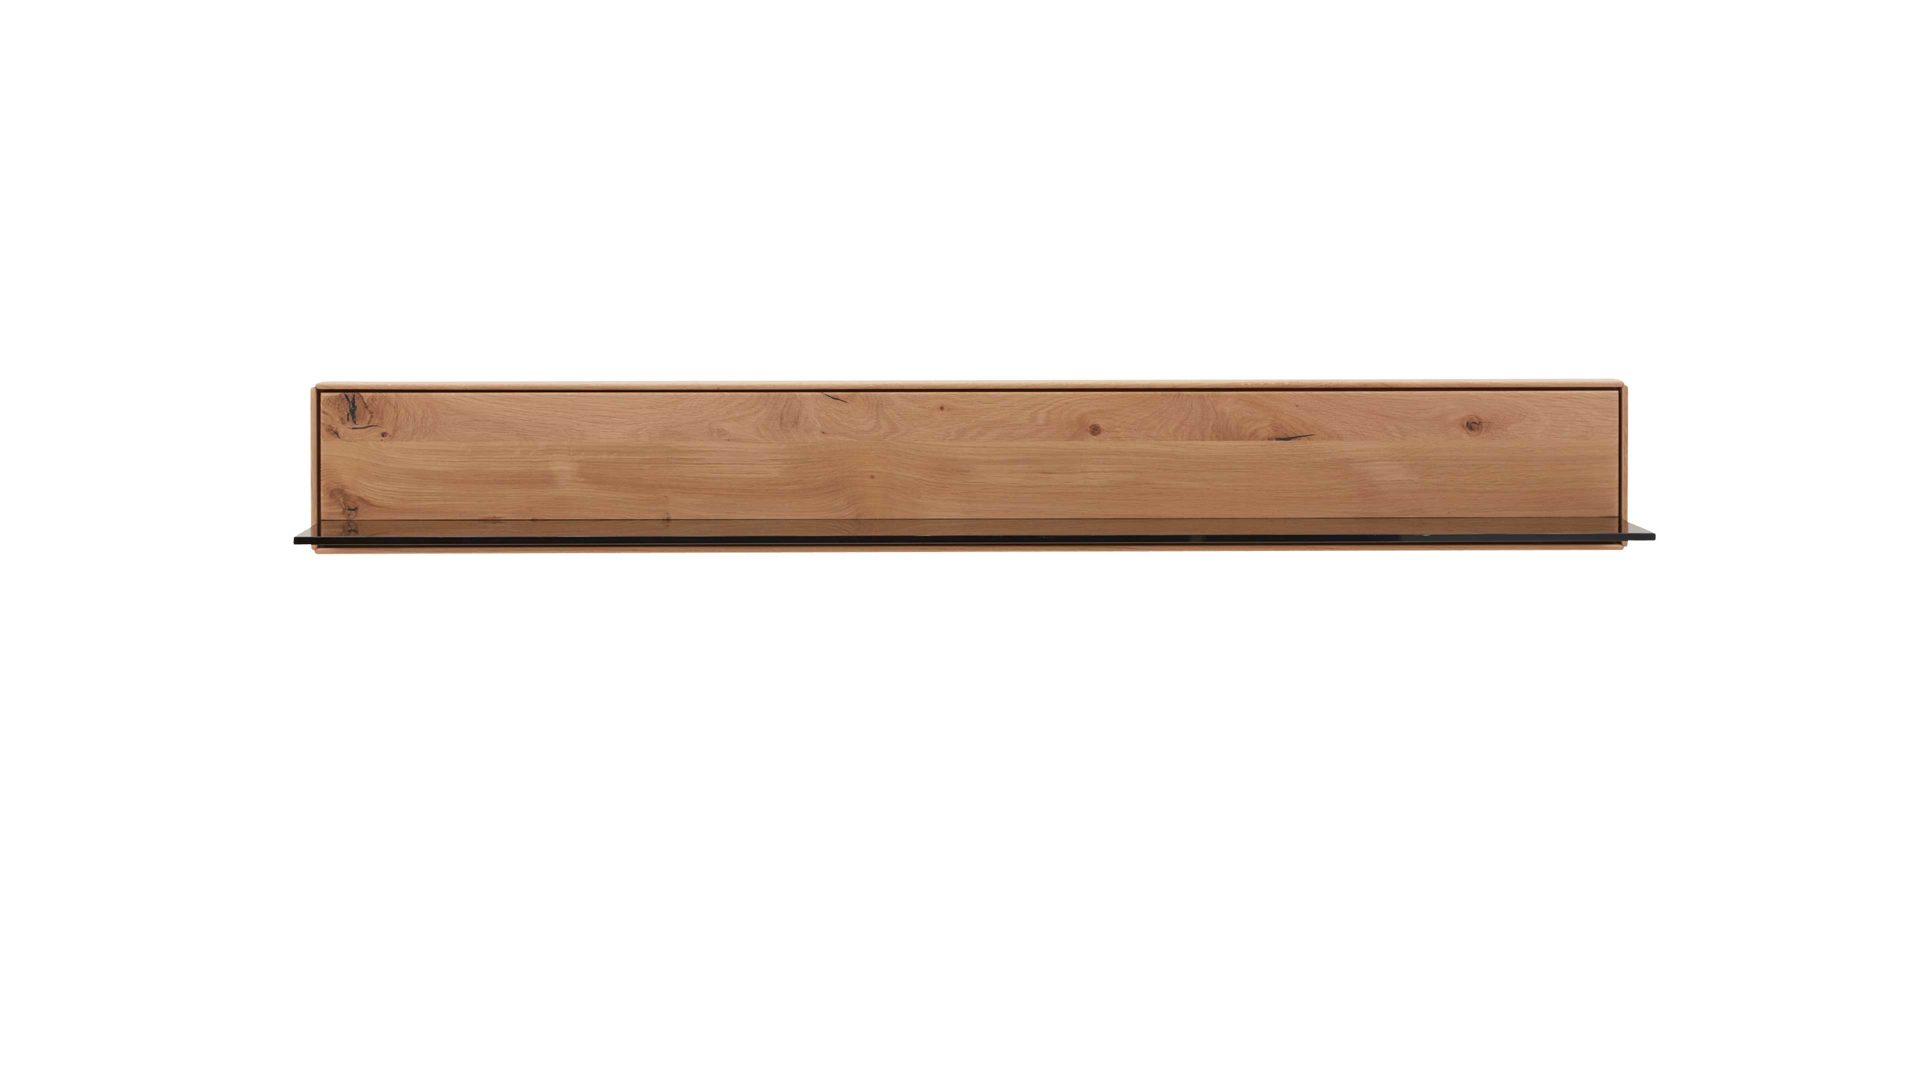 Wandregal Interliving aus Holz in Holzfarben Interliving Wohnzimmer Serie 2020 - Wandboard 151851 Asteiche bianco – Länge ca. 162 cm